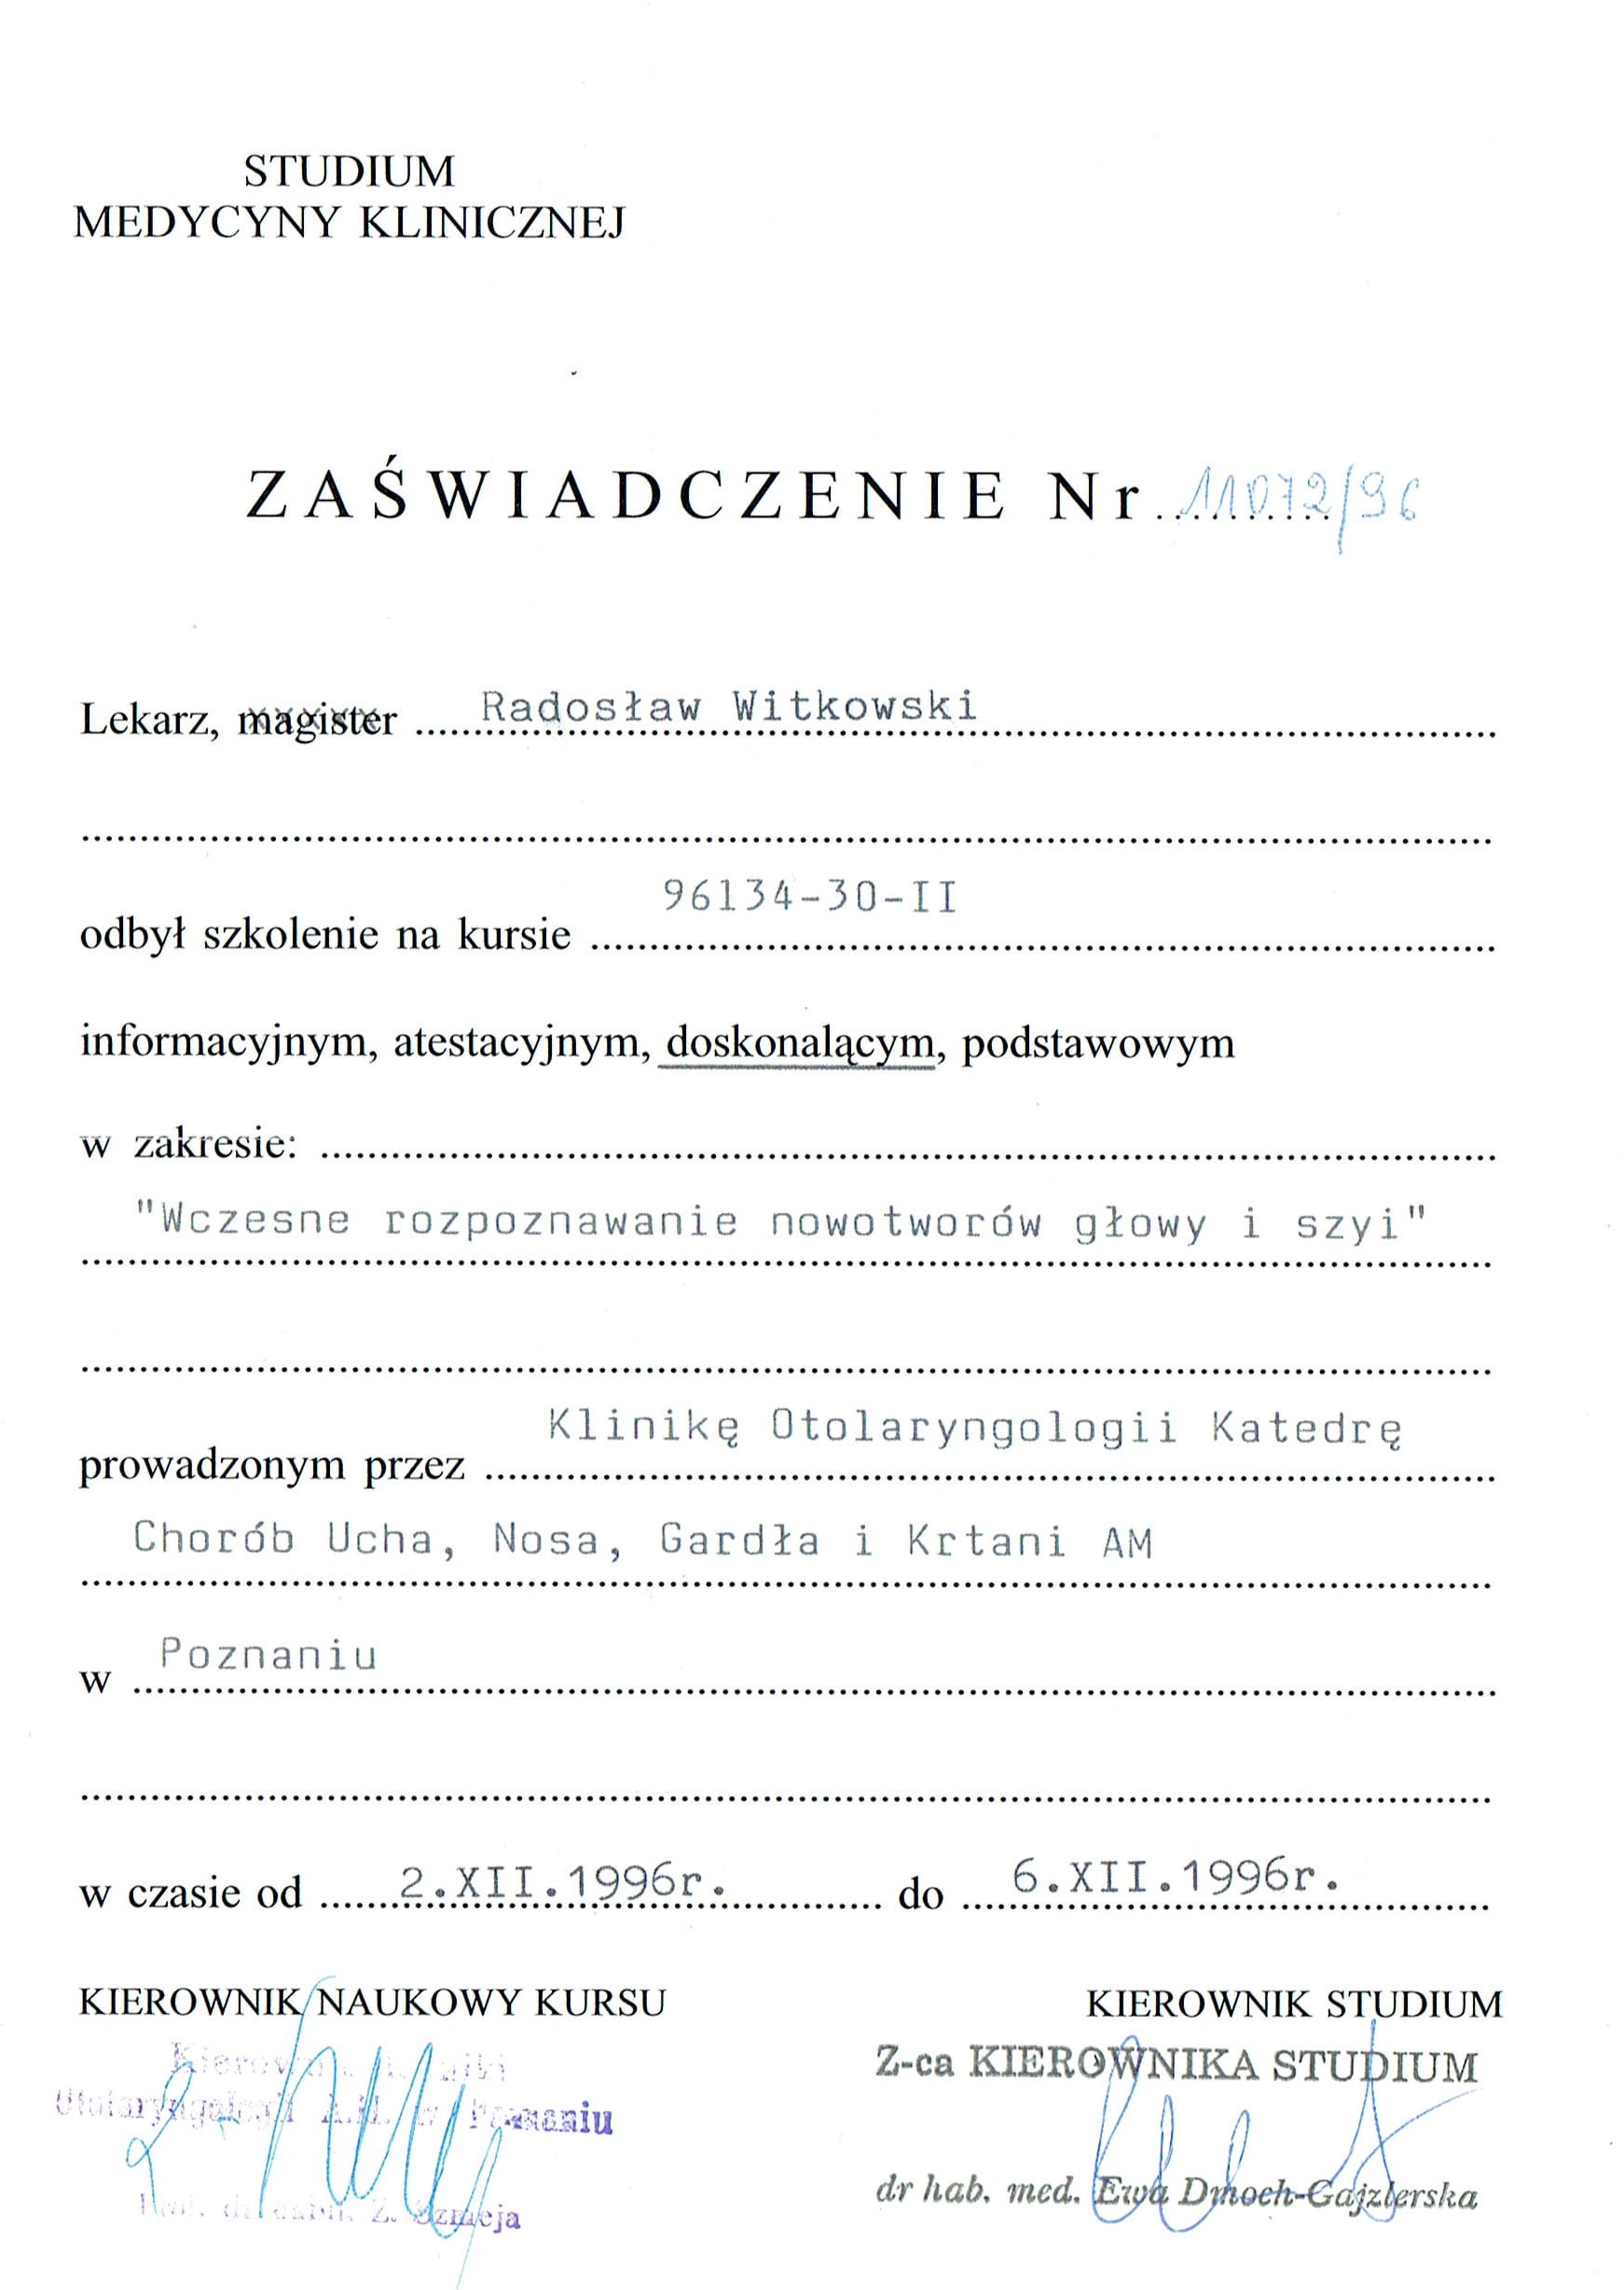 Radosław Witkowski certyfikat 11